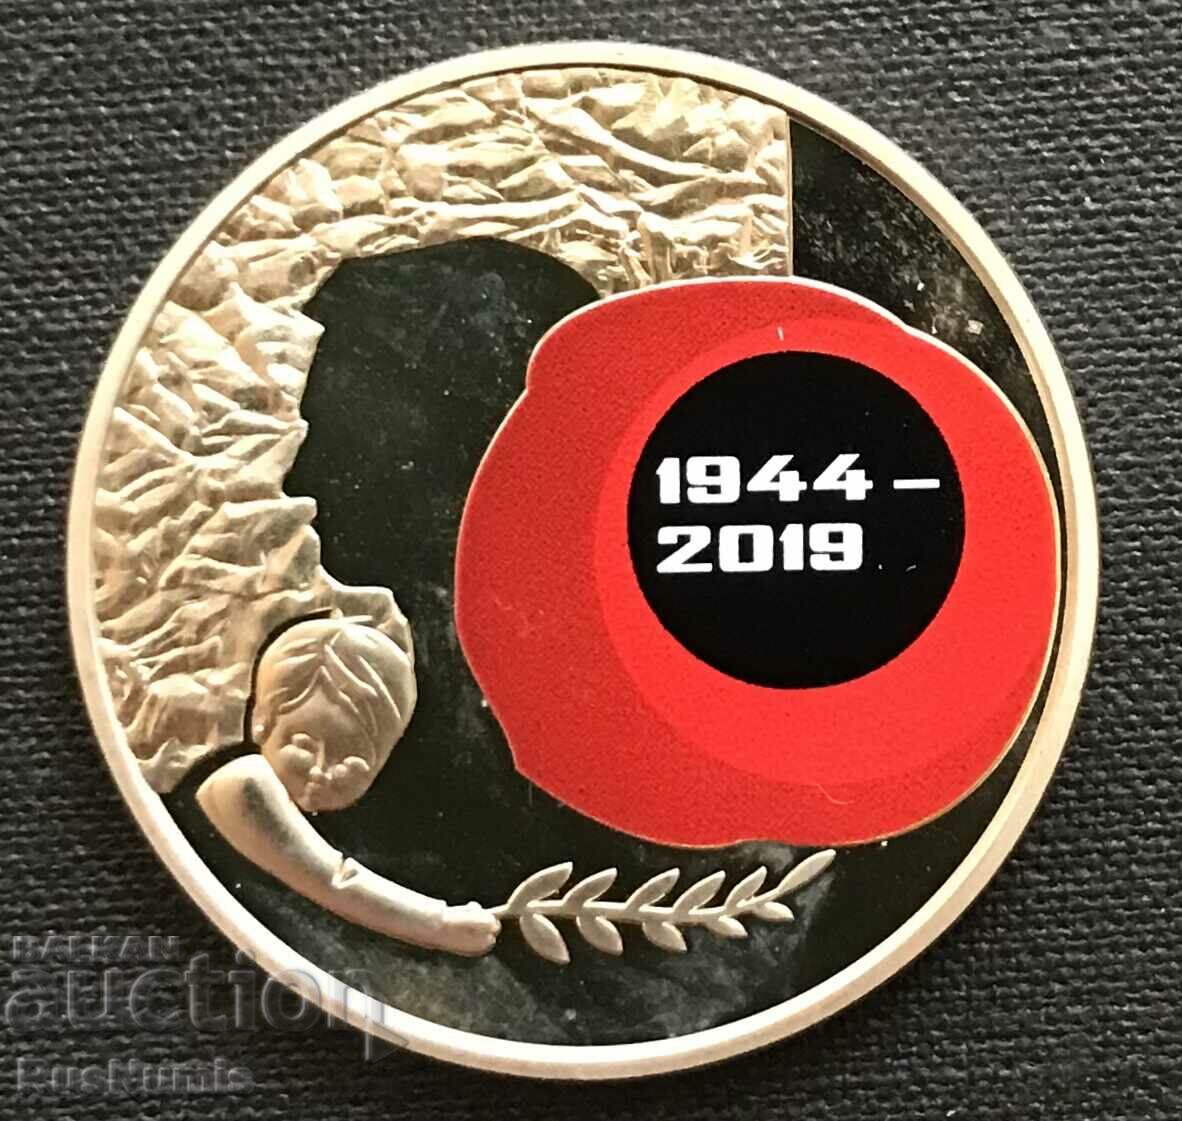 Ουκρανία. 5 εθνικά νομίσματα 2019. 75 χρόνια από την απελευθέρωση. UNC.